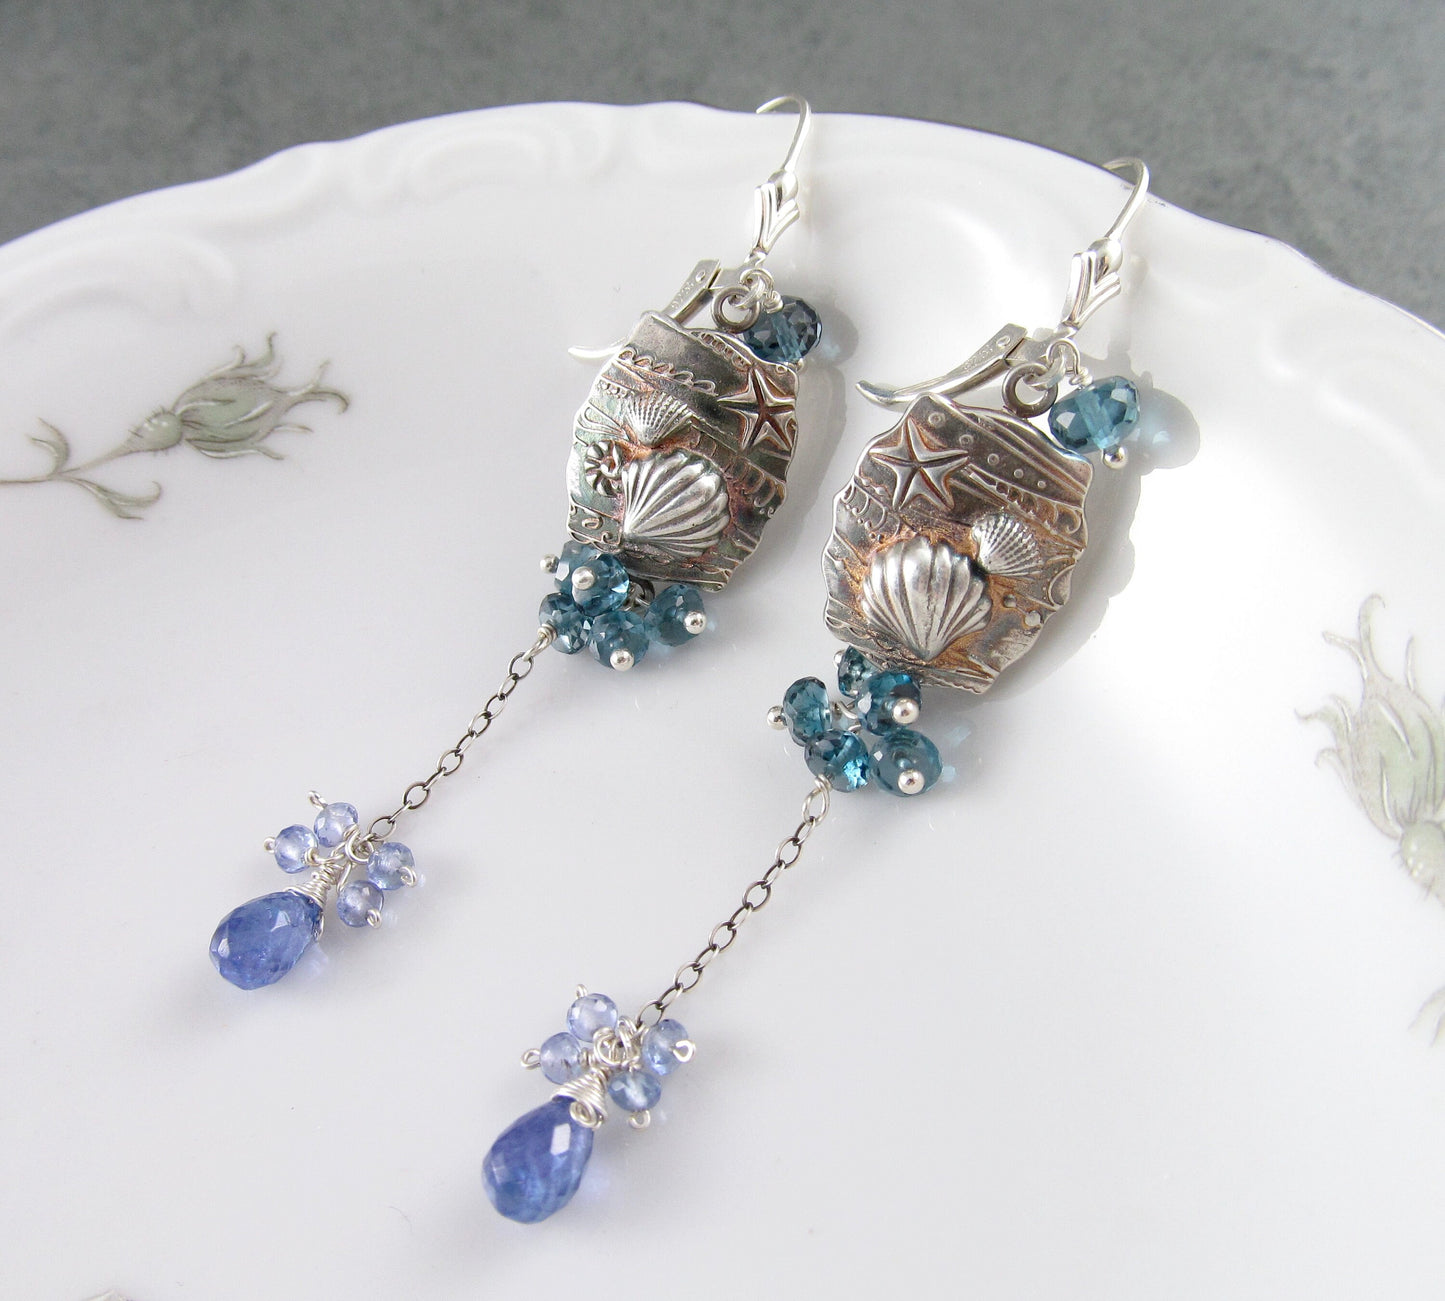 Seascape earrings, handmade recycled fine silver shell earrings with London blue topaz & tanzanite-OOAK beach earrings